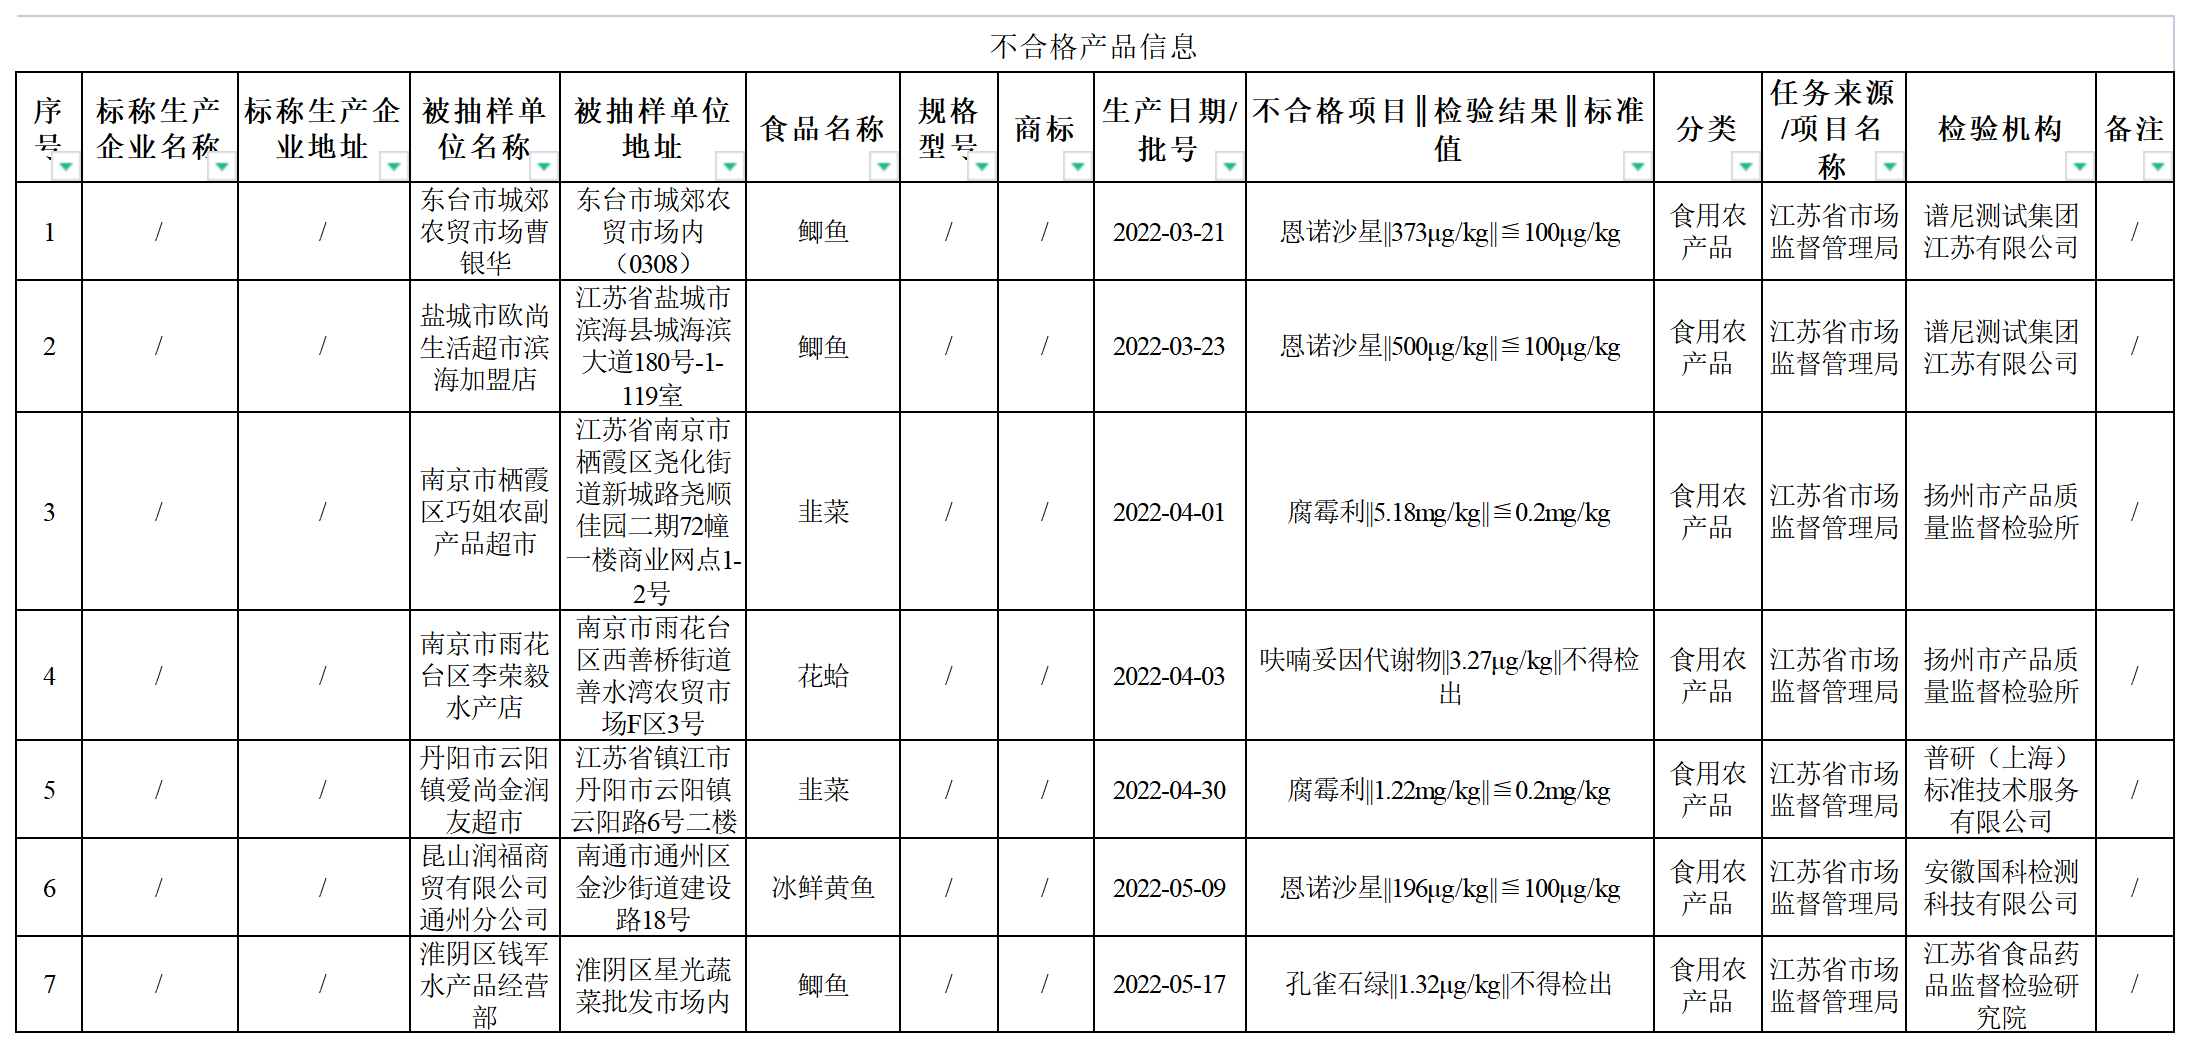 “江苏省市场监管发布7批次食品不合格情况通告 涉及欧尚生活超市等